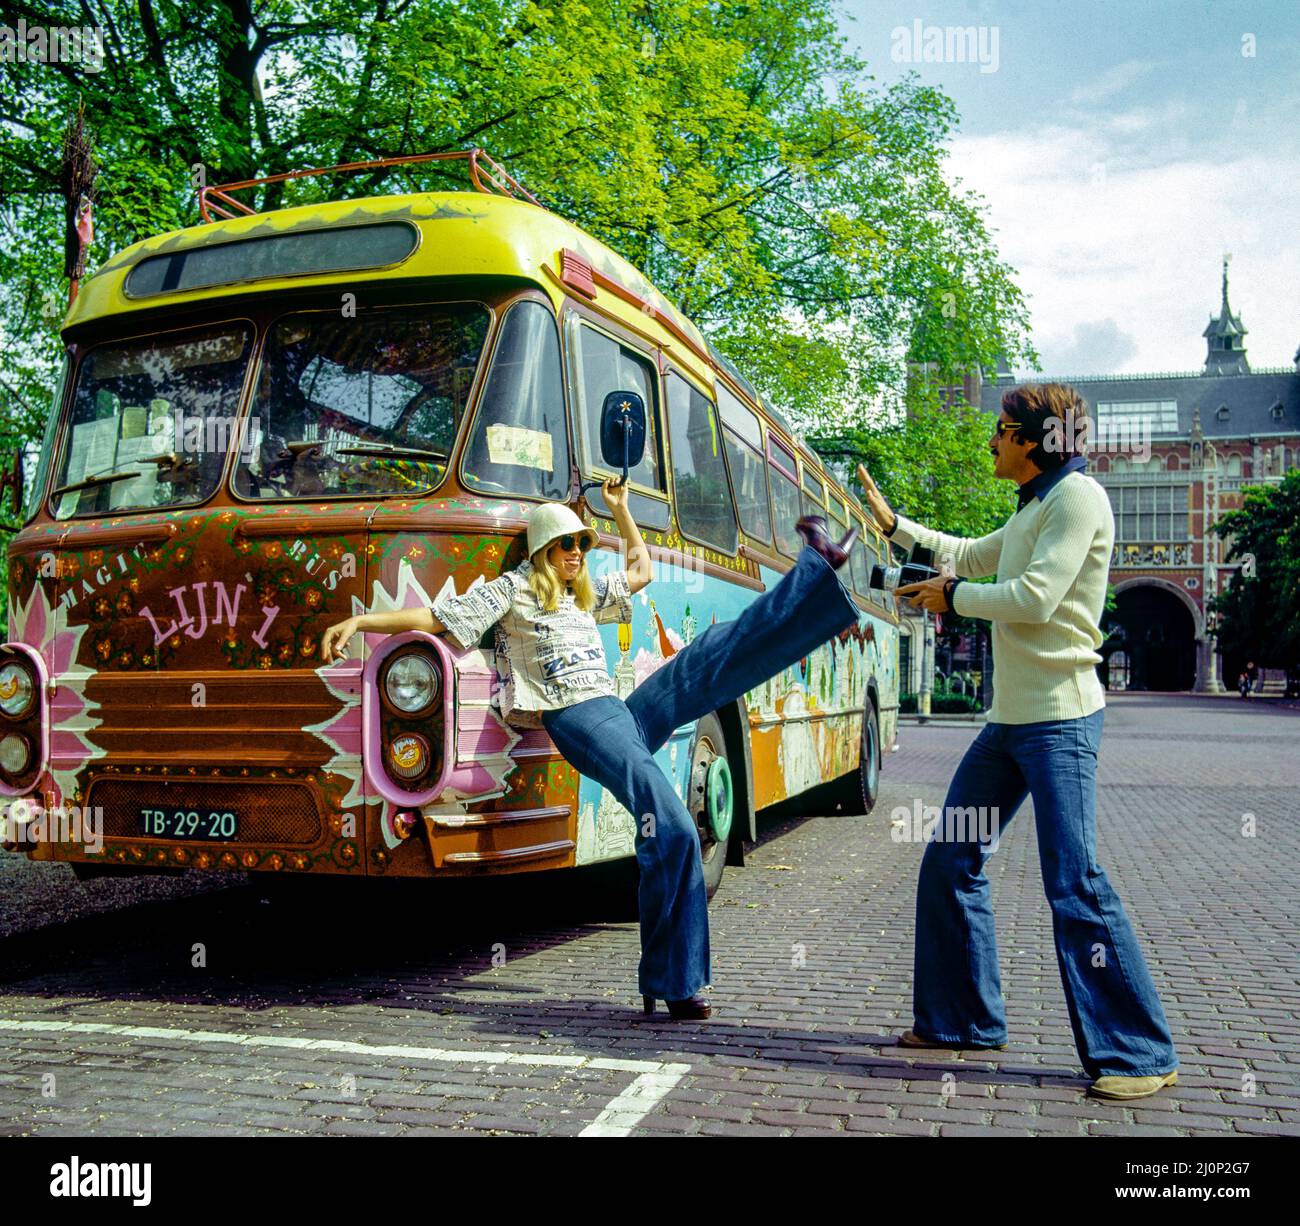 Vintage Amsterdam 1970s, coppia che scatta foto divertenti, furgone decorato in stile hippy, Olanda, Paesi Bassi, Europa, Foto Stock